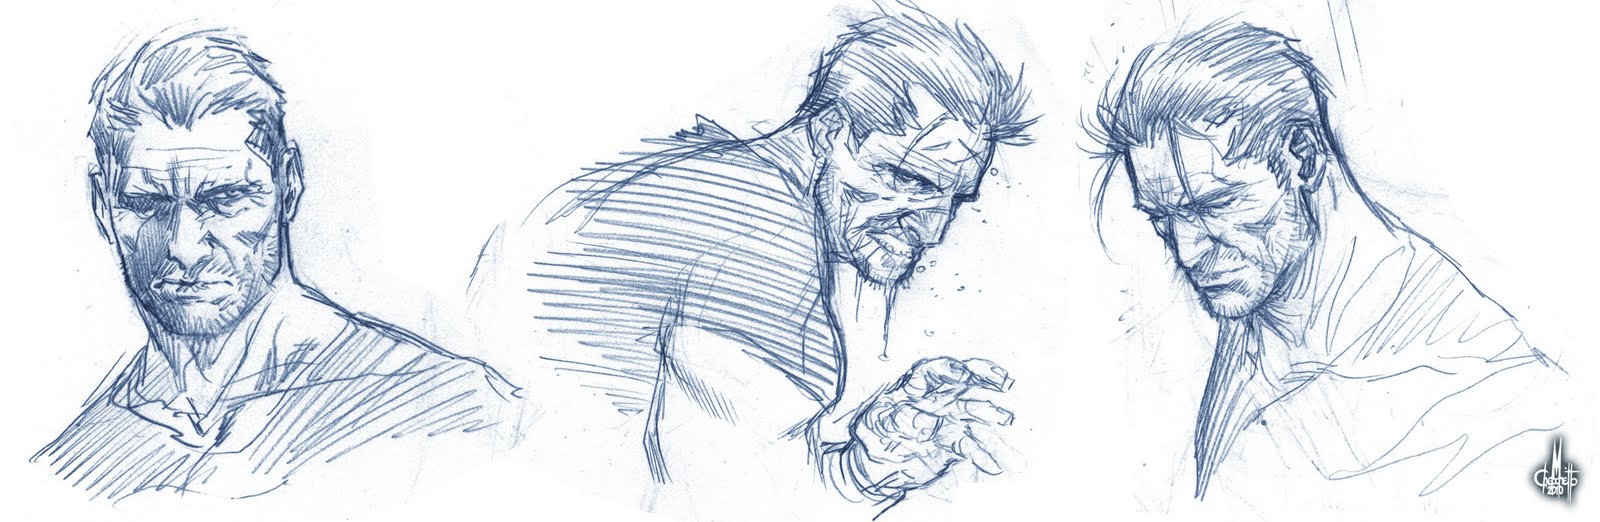 Punisher head sketch